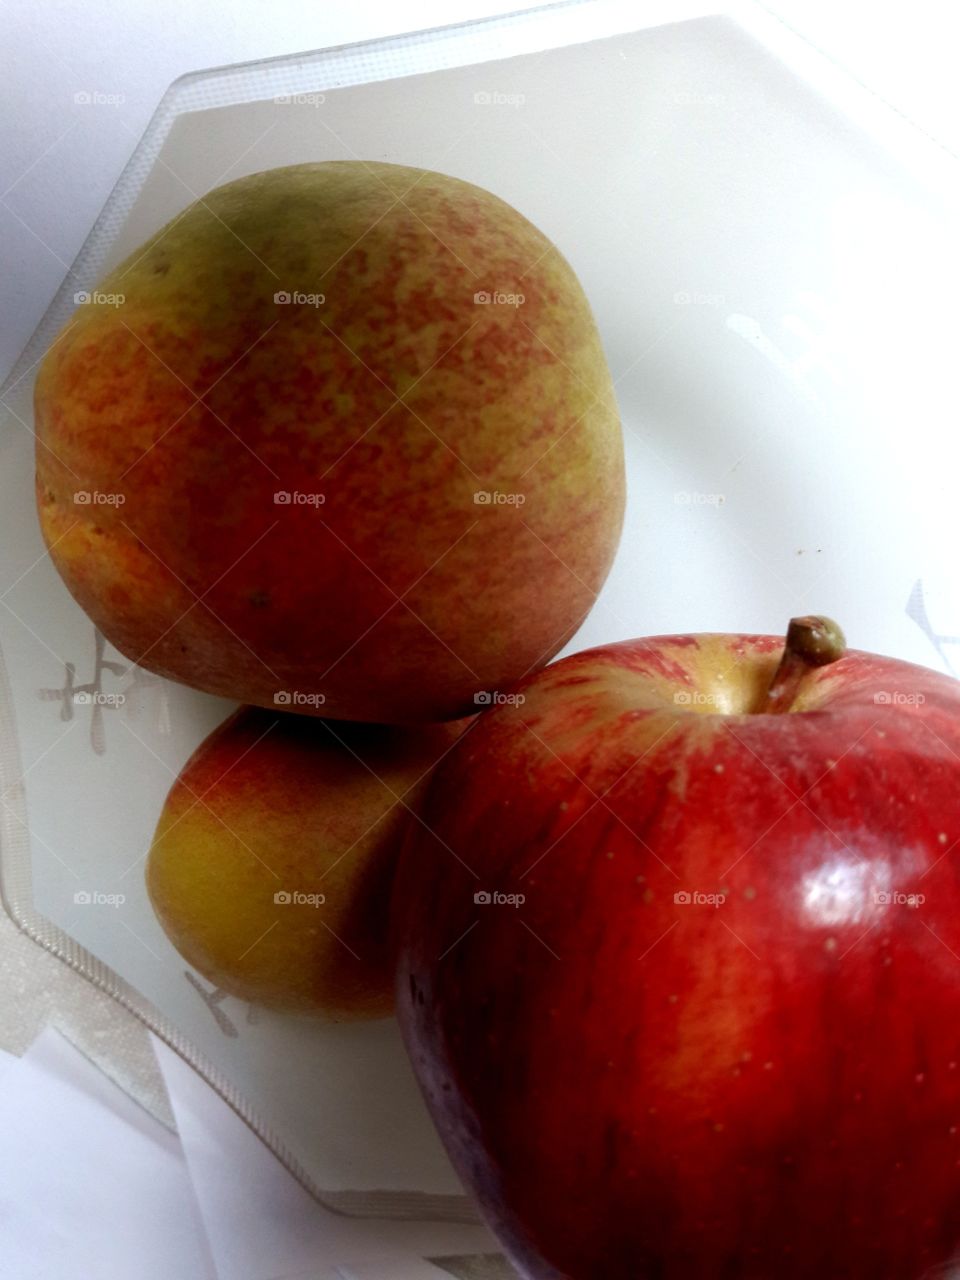 Fruits Peach Apples